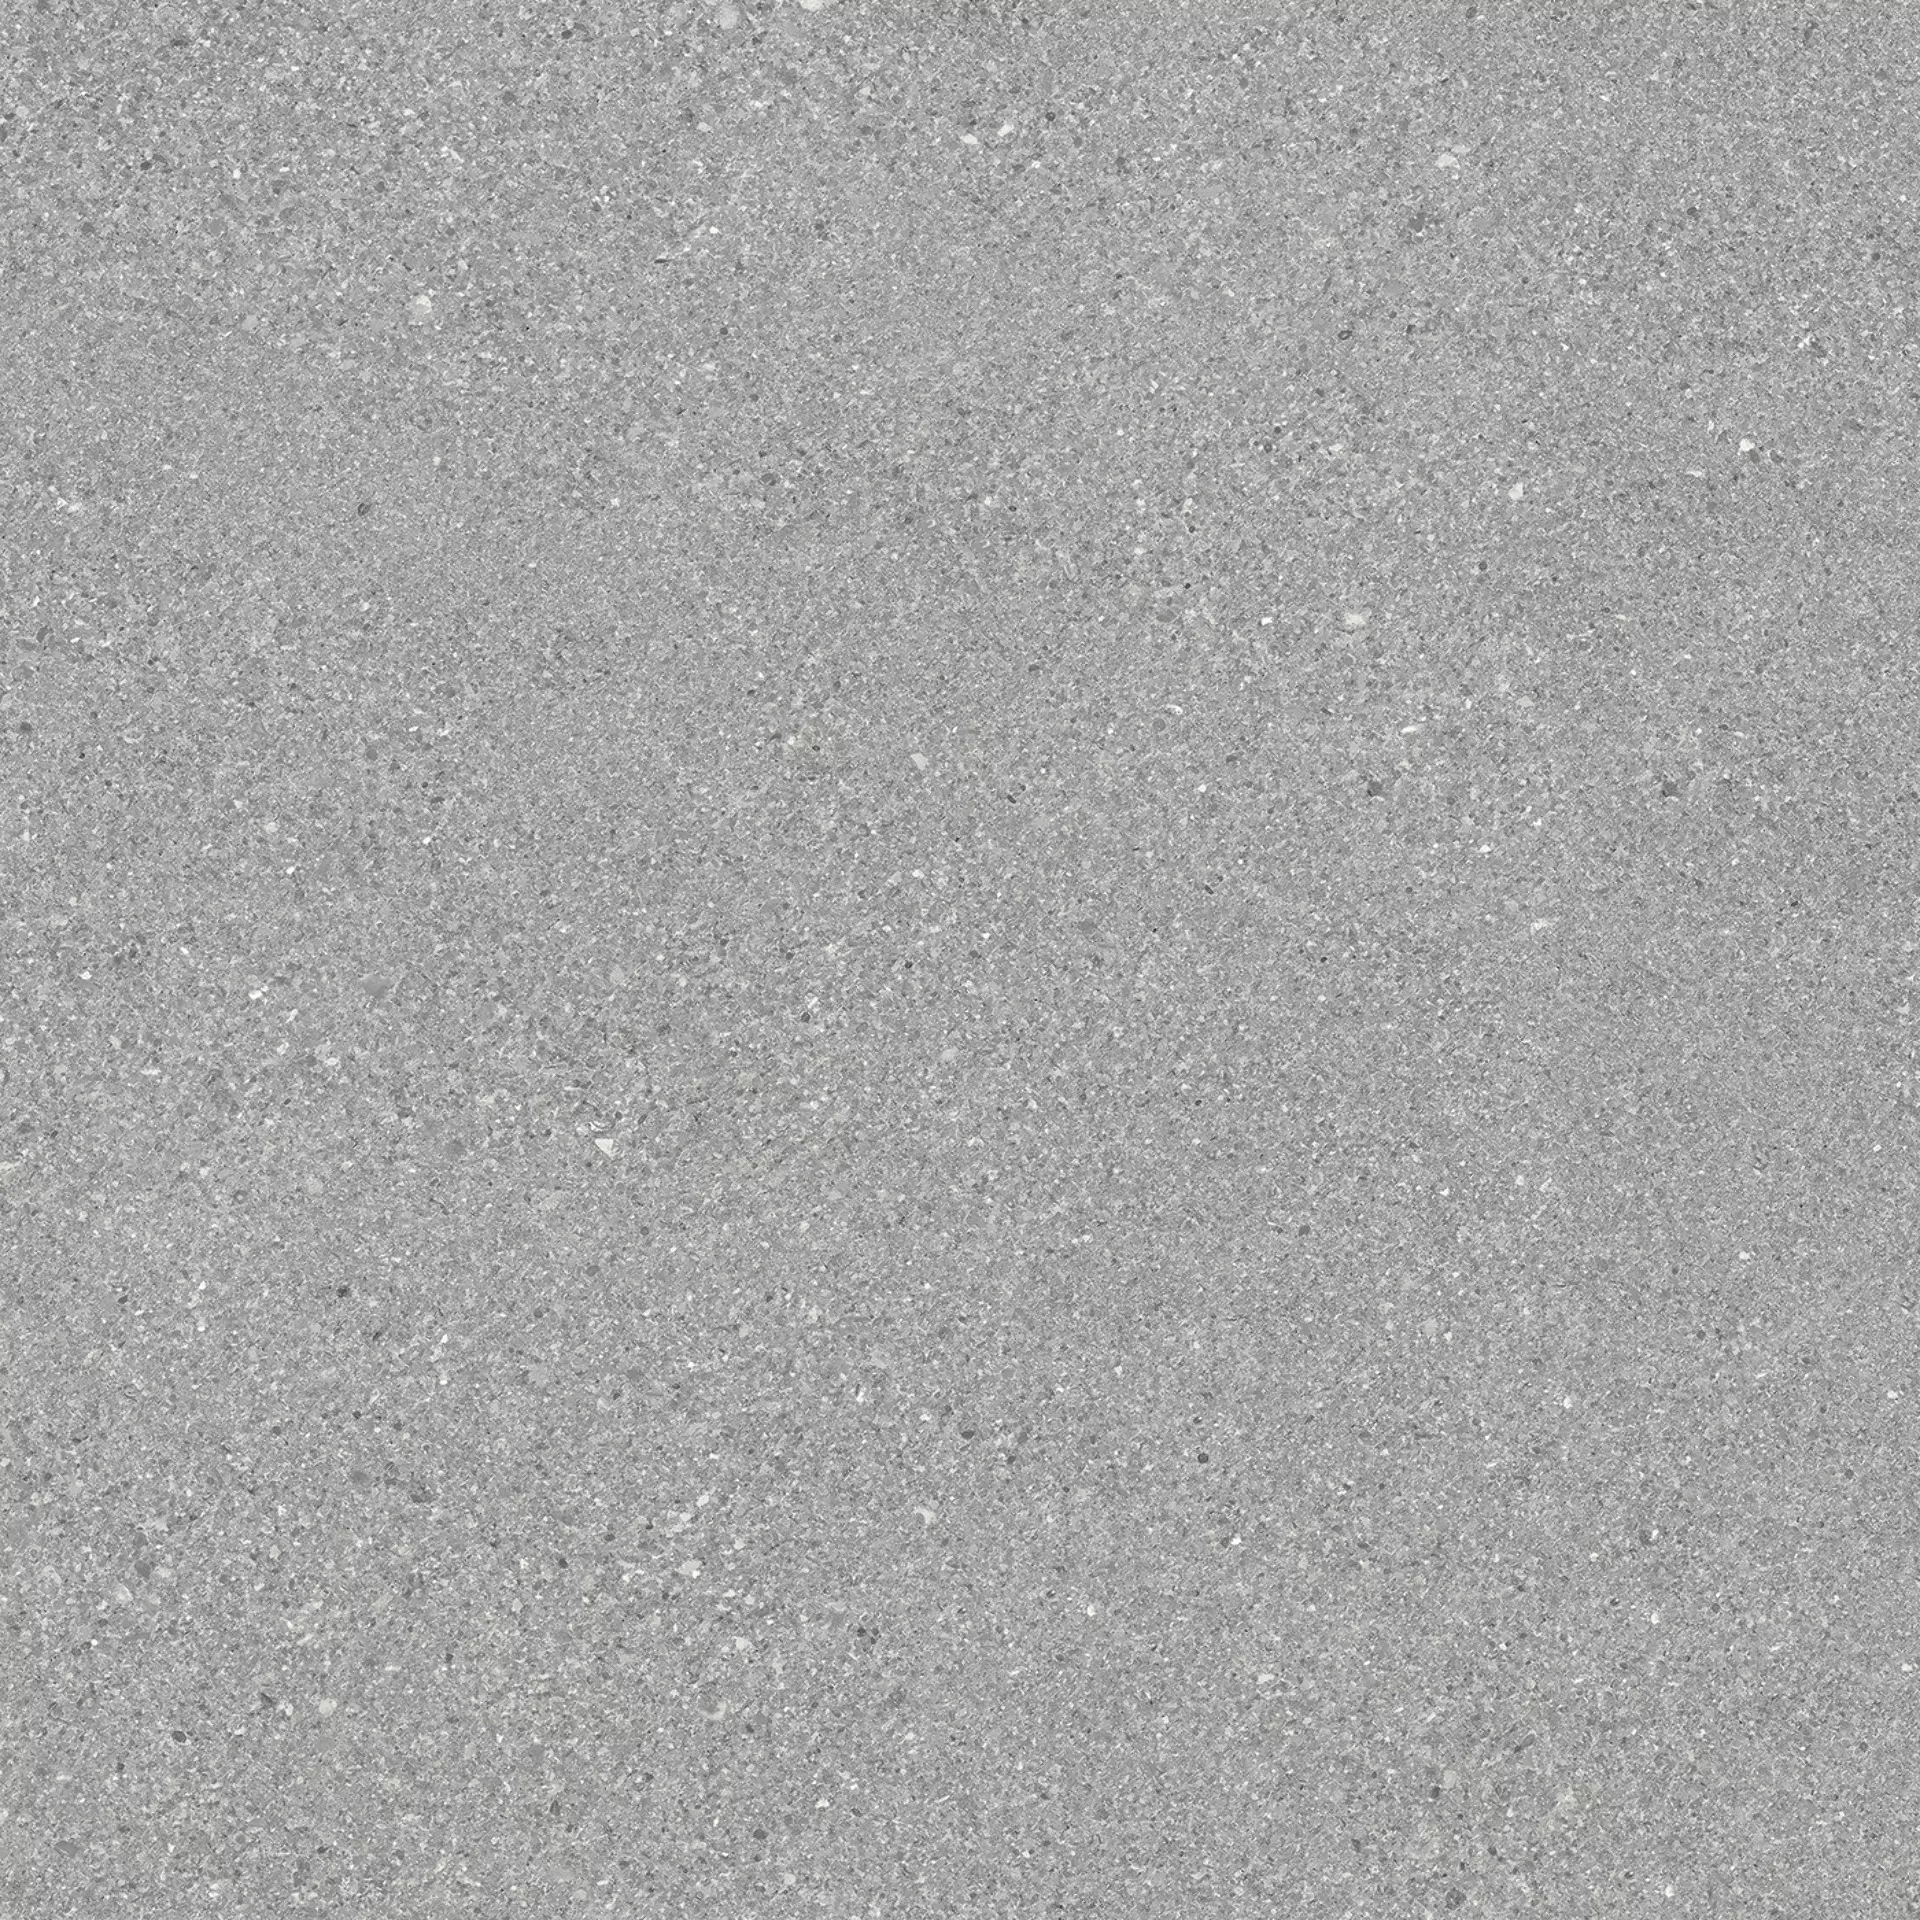 Ergon Grain Stone Fine Grain Grey Naturale E09P 60x60cm rectified 9,5mm